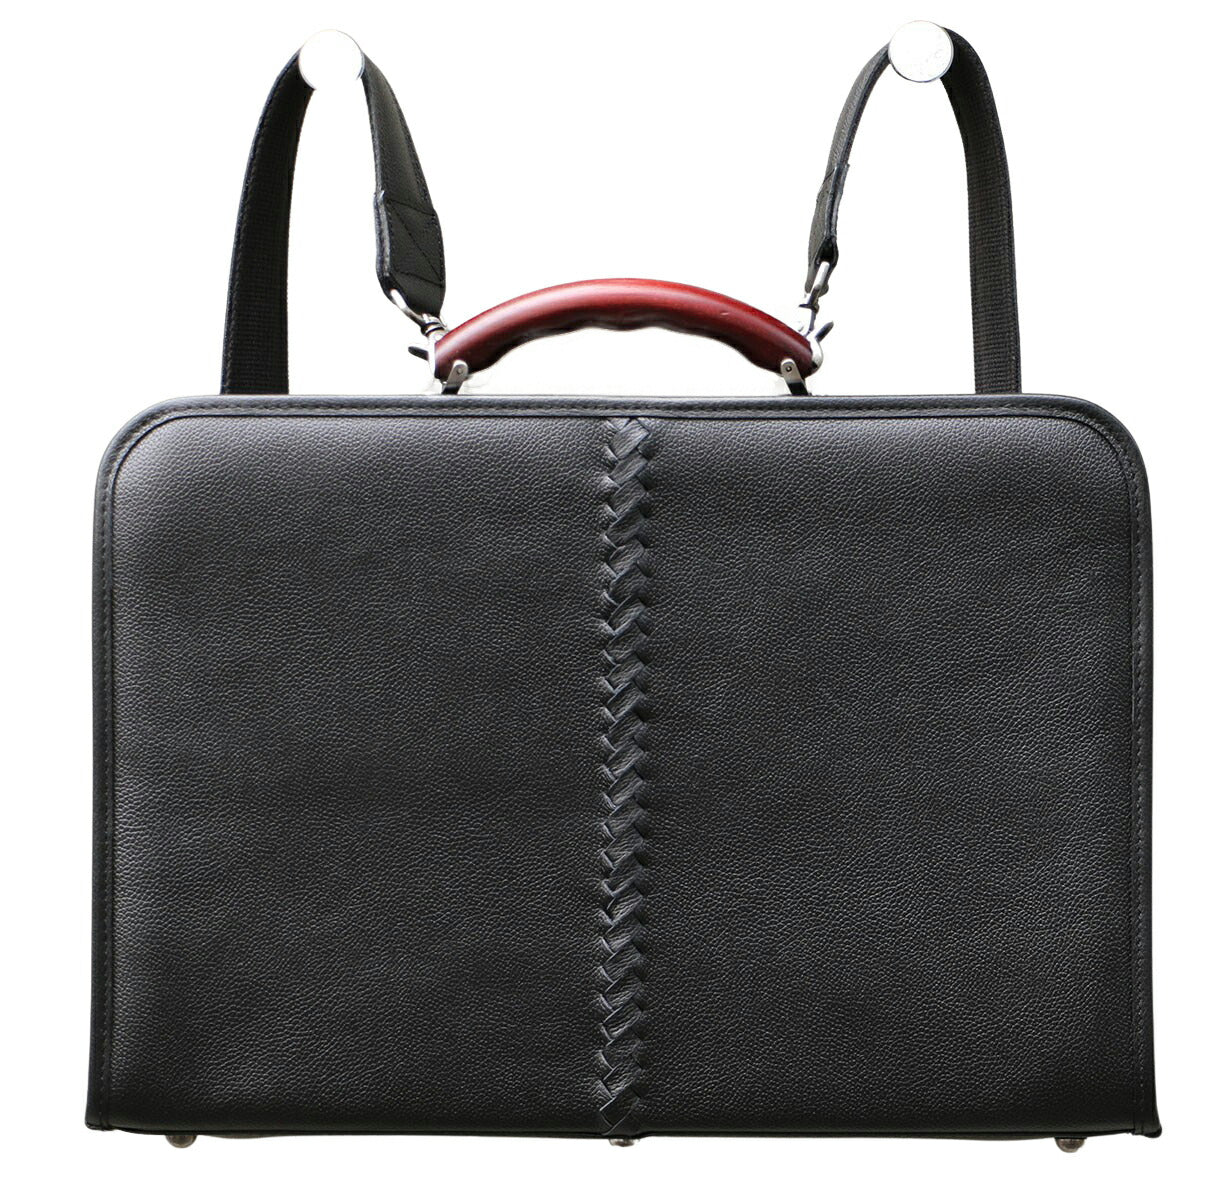 豊岡鞄、ダレスバッグ、リュックのYOUTA(ヨウタ)公式通販